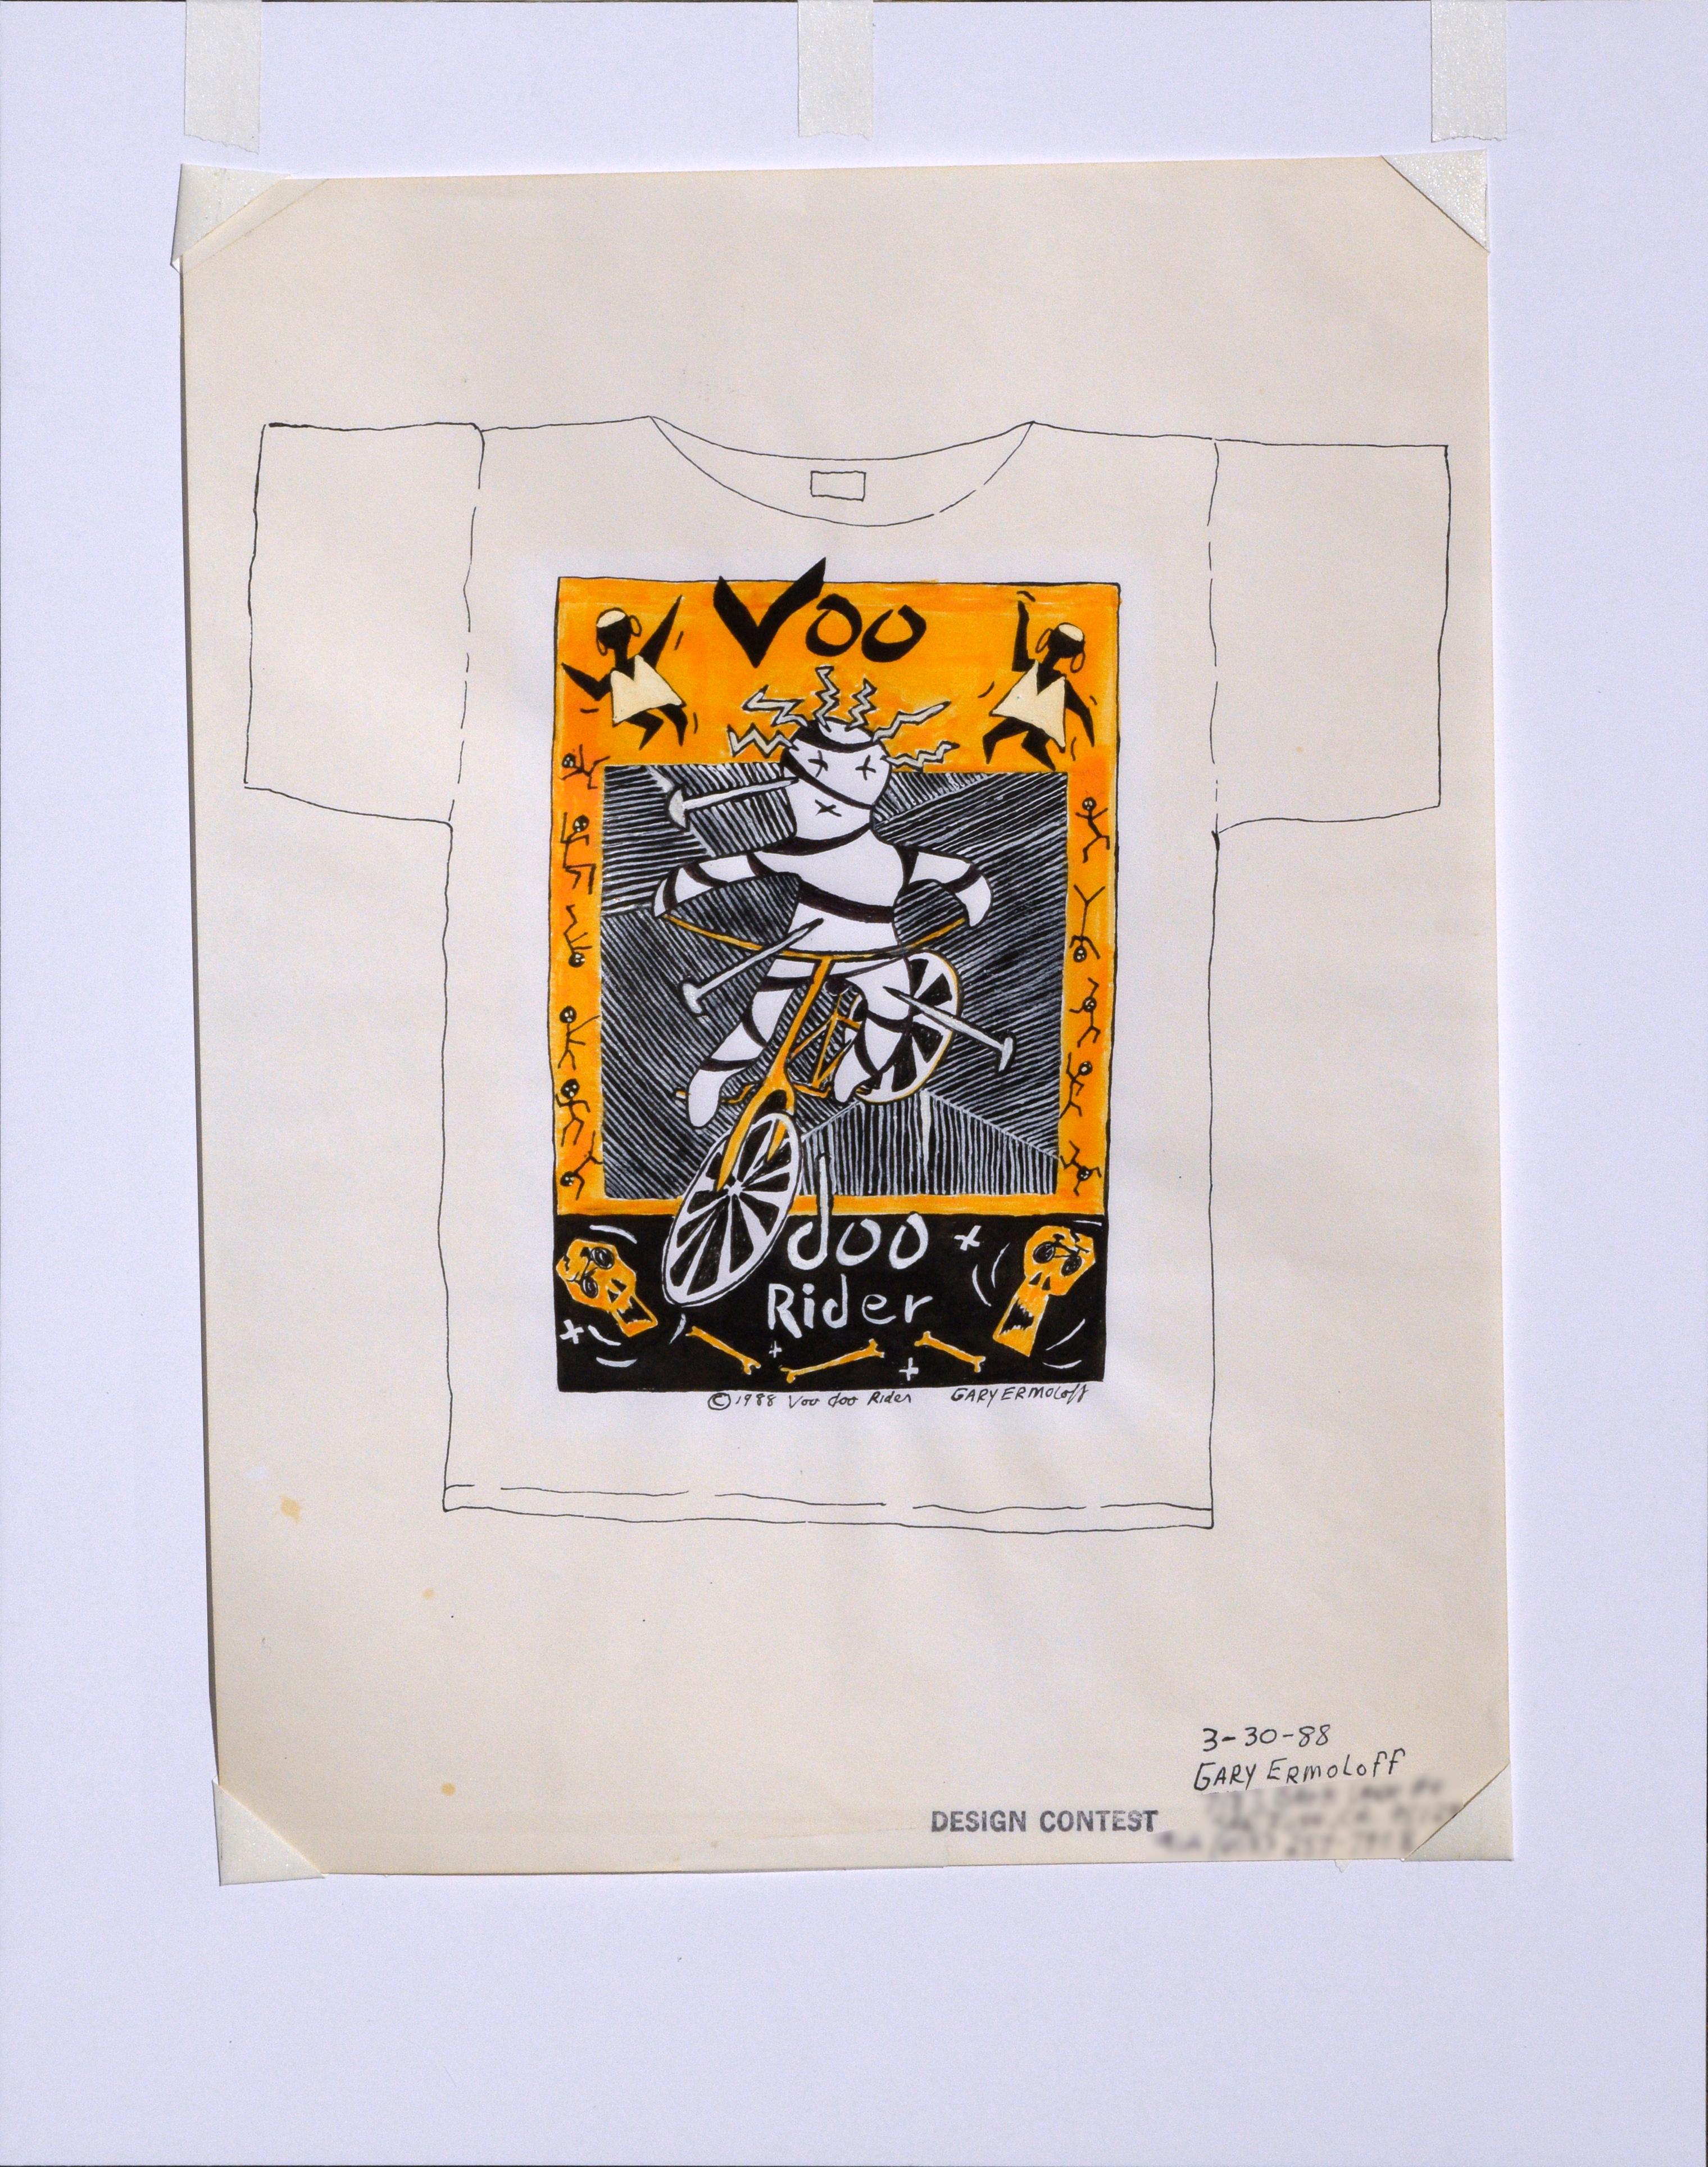 Originalzeichnung für ein T-Shirt-Design der späten 1980er Jahre für Voodoo Rider von Gary Ermoloff (Amerikaner, geb. 1949). Datiert, betitelt und signiert am unteren Rand des Entwurfs. 

Künstlerinfo in der unteren rechten Ecke (unscharf, um die